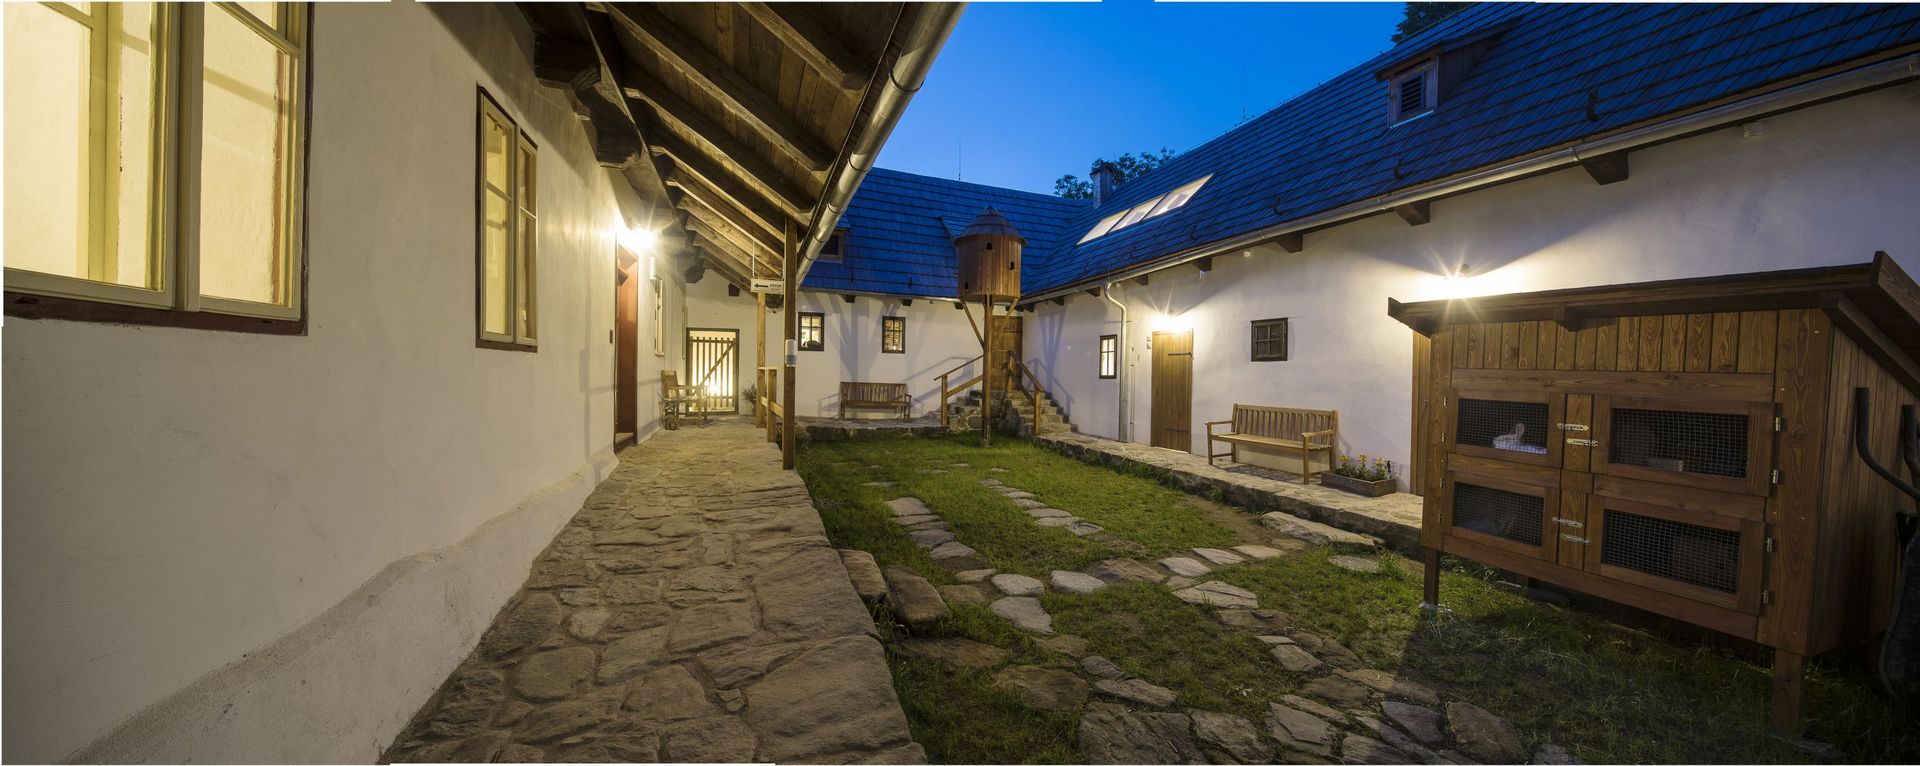 Dům přírody Žďárských vrchů, Krátká